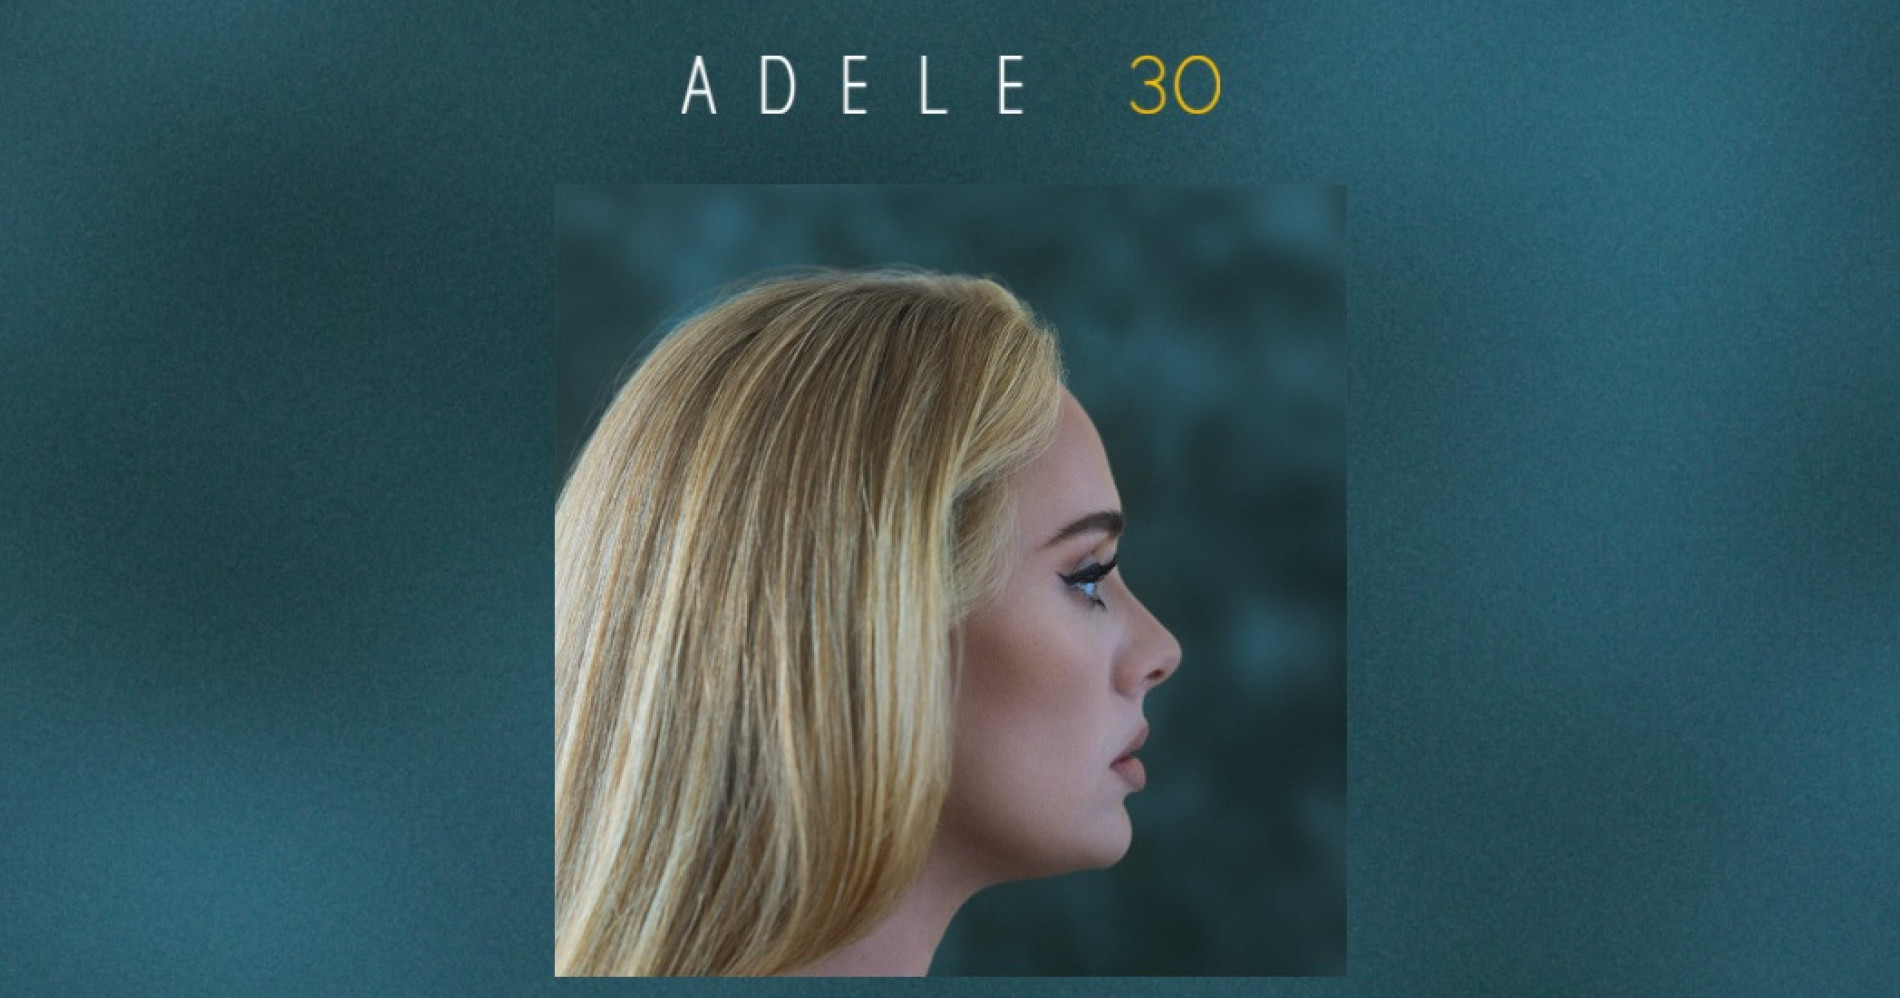 Ini Nih Fakta Seputar Album Adele 30 yang Bakal Dirilis November Mendatang